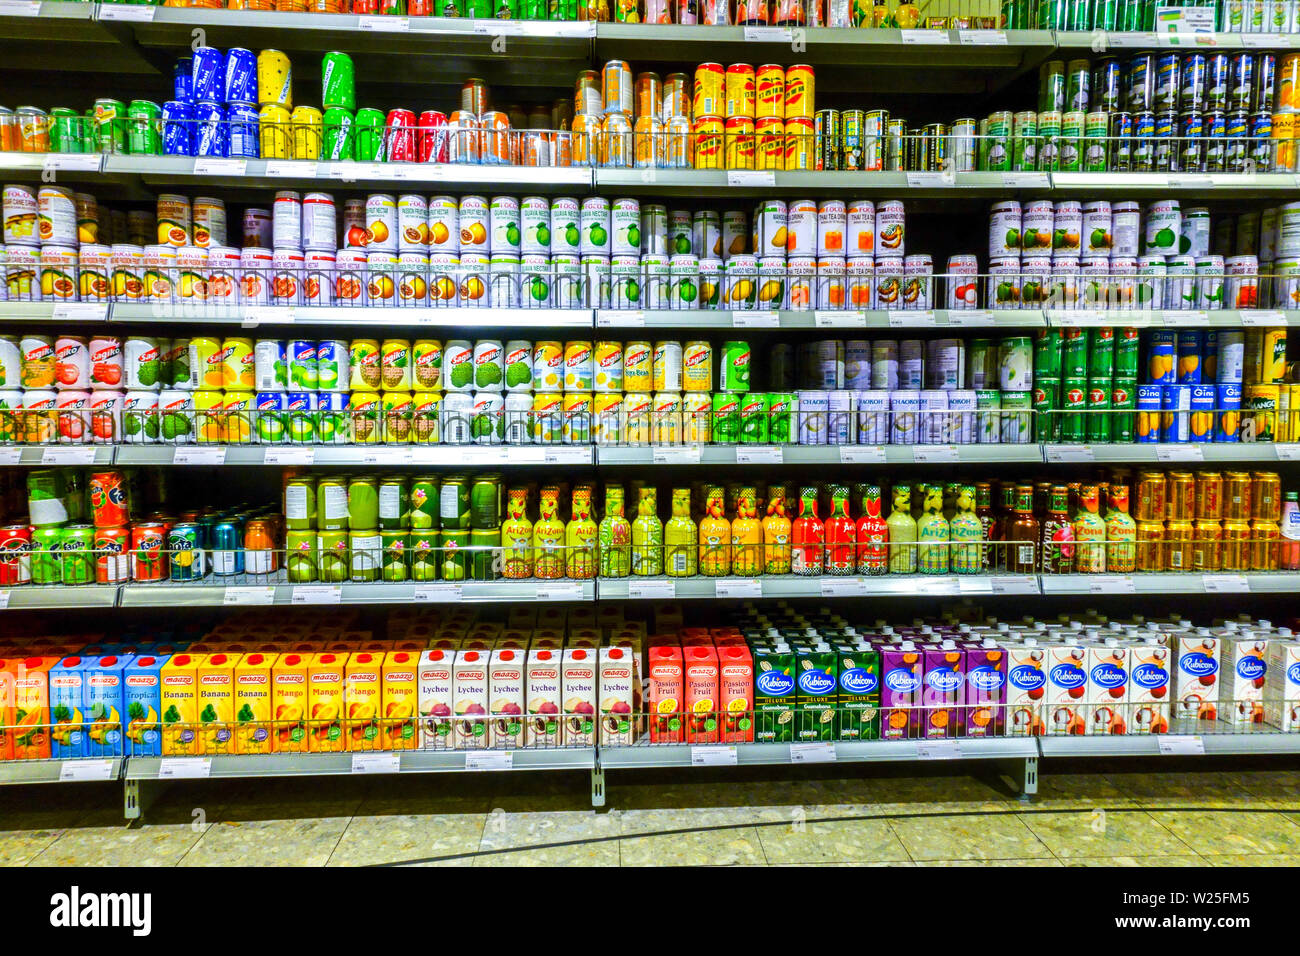 Supermarché asiatique asie 'Go' les rayons des supermarchés, les fruits en boîte, Dresden, Allemagne Banque D'Images